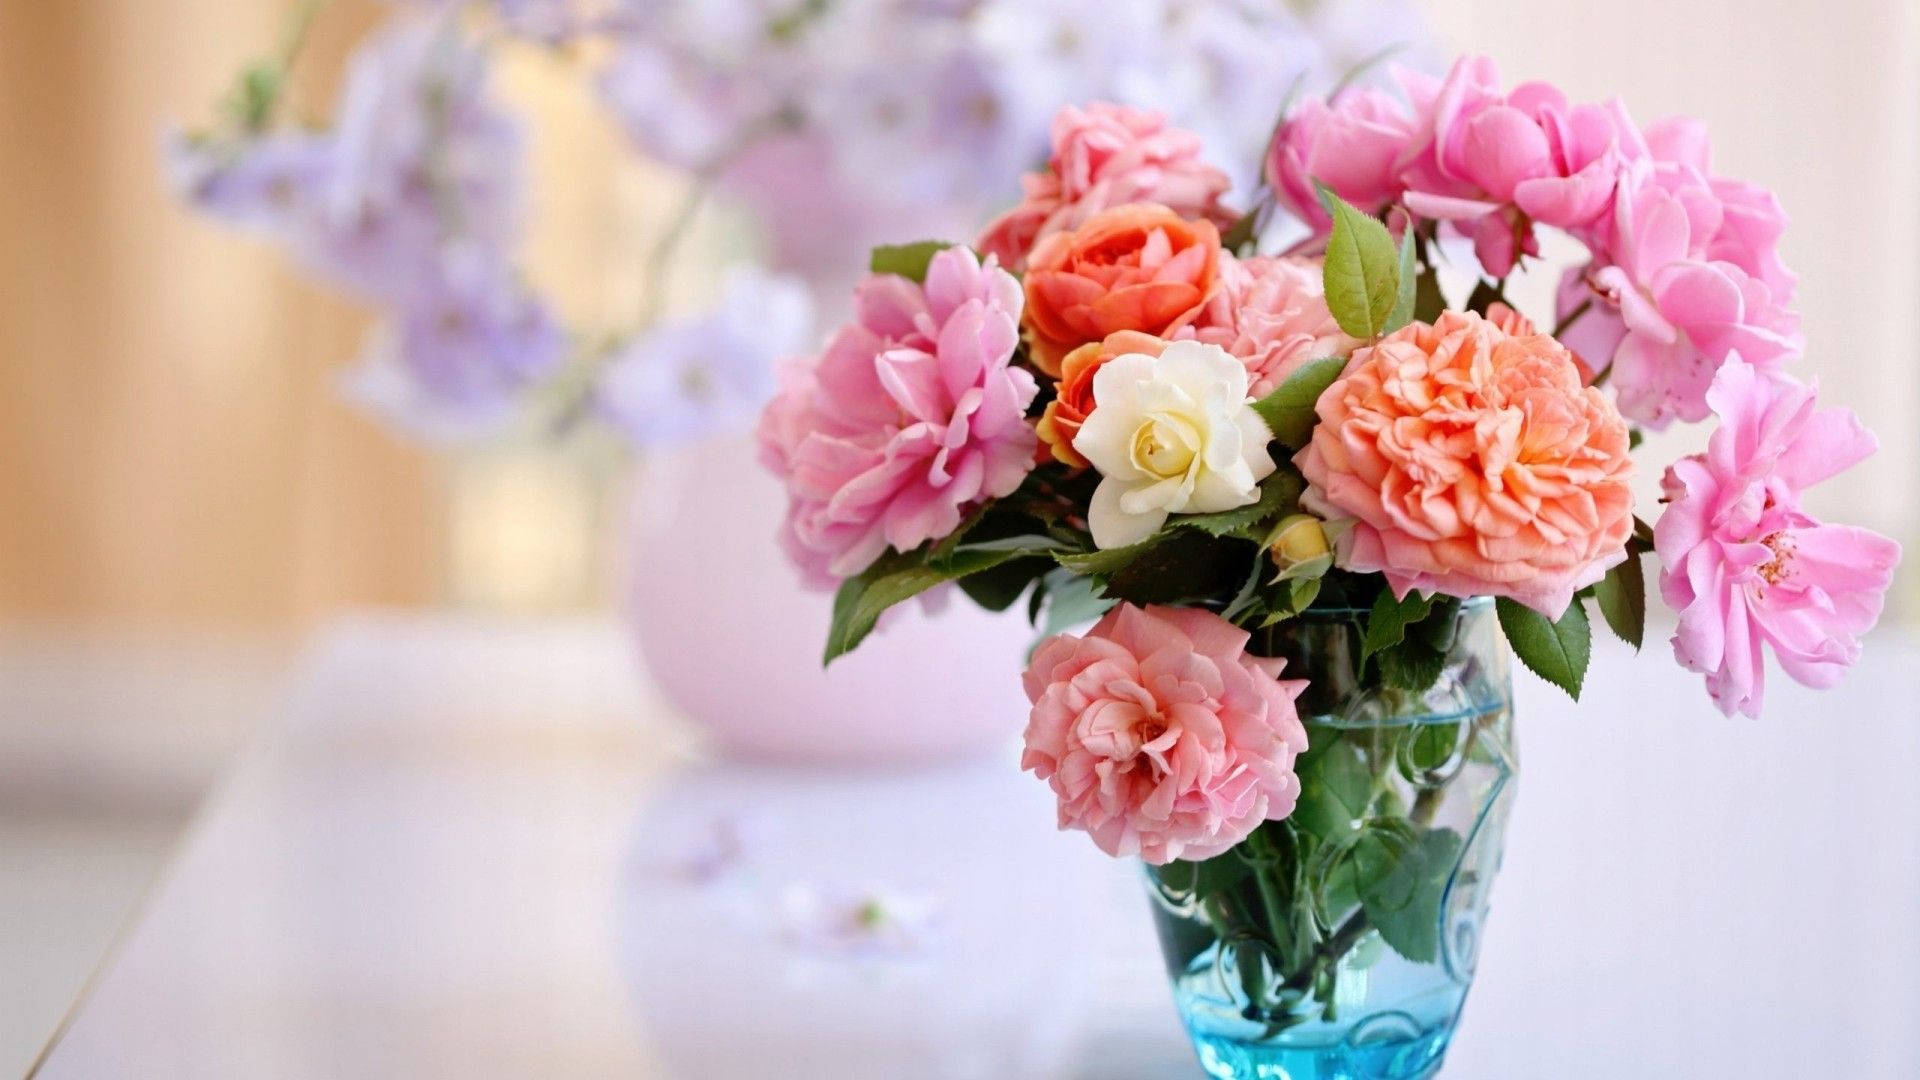 Flower Vase With Garden Roses Desktop Wallpaper